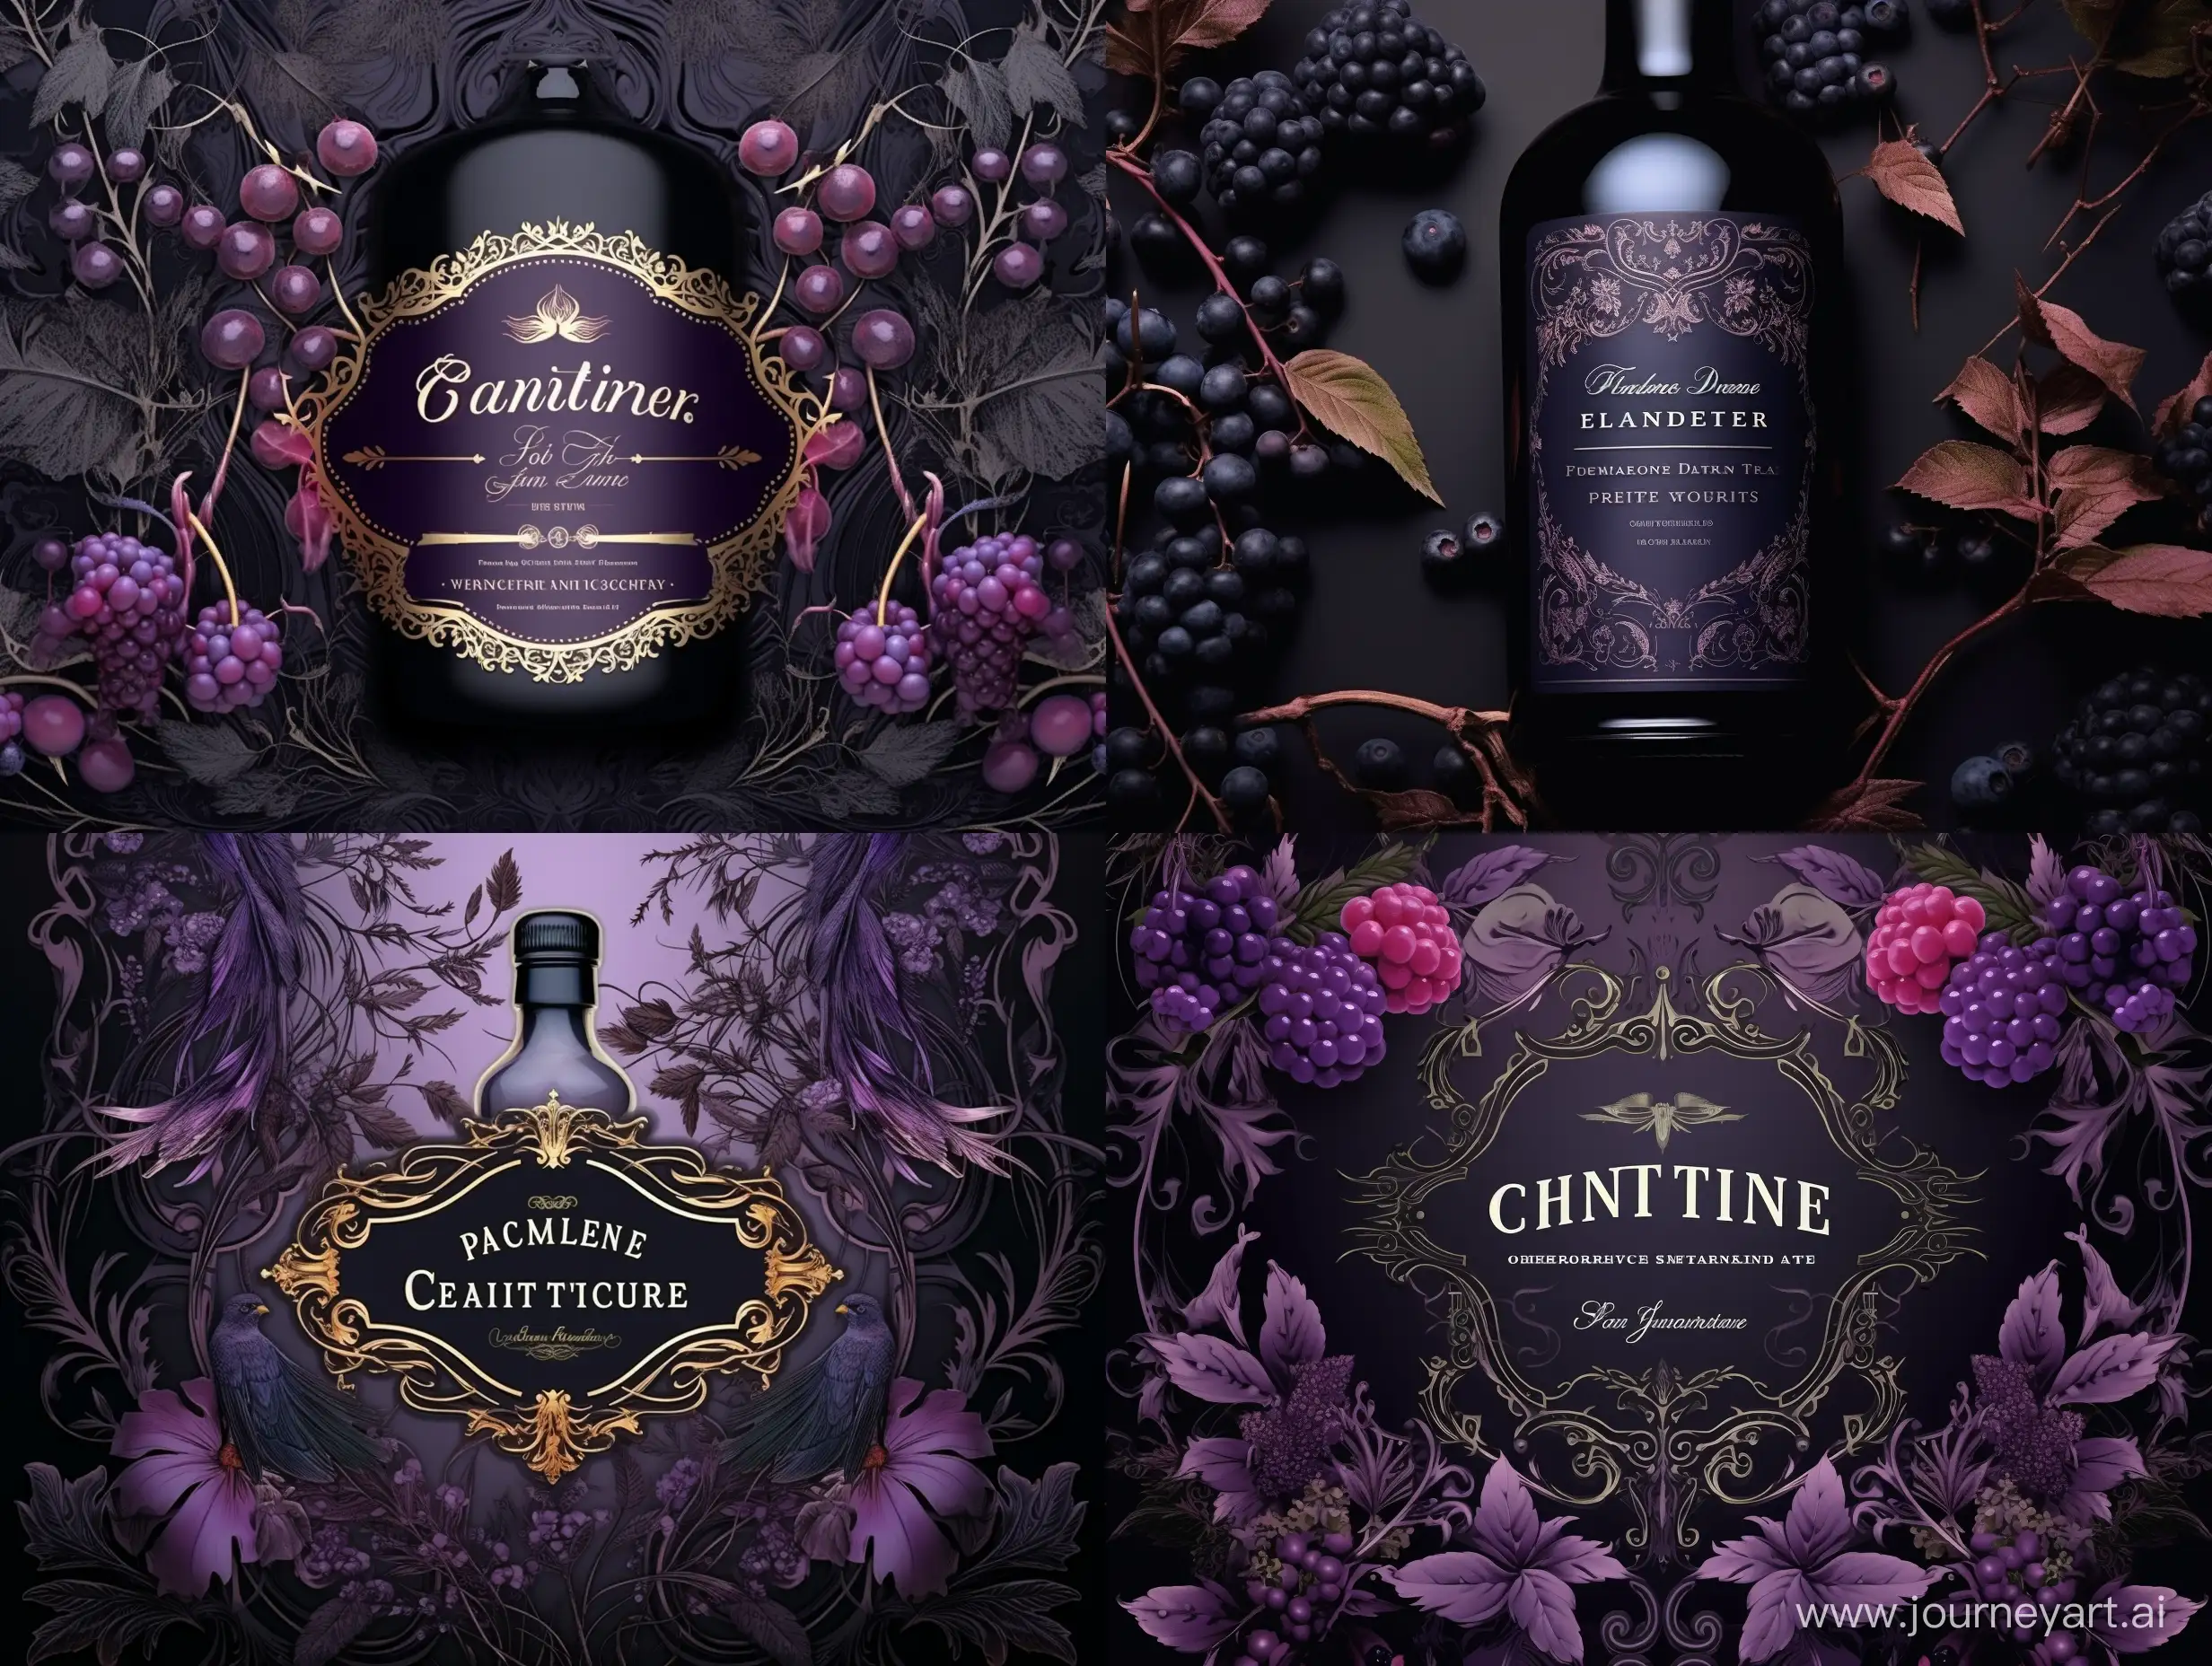 Gothic-Fantasy-Black-Currant-Liquor-Label-in-Violette-and-Purple-Tones